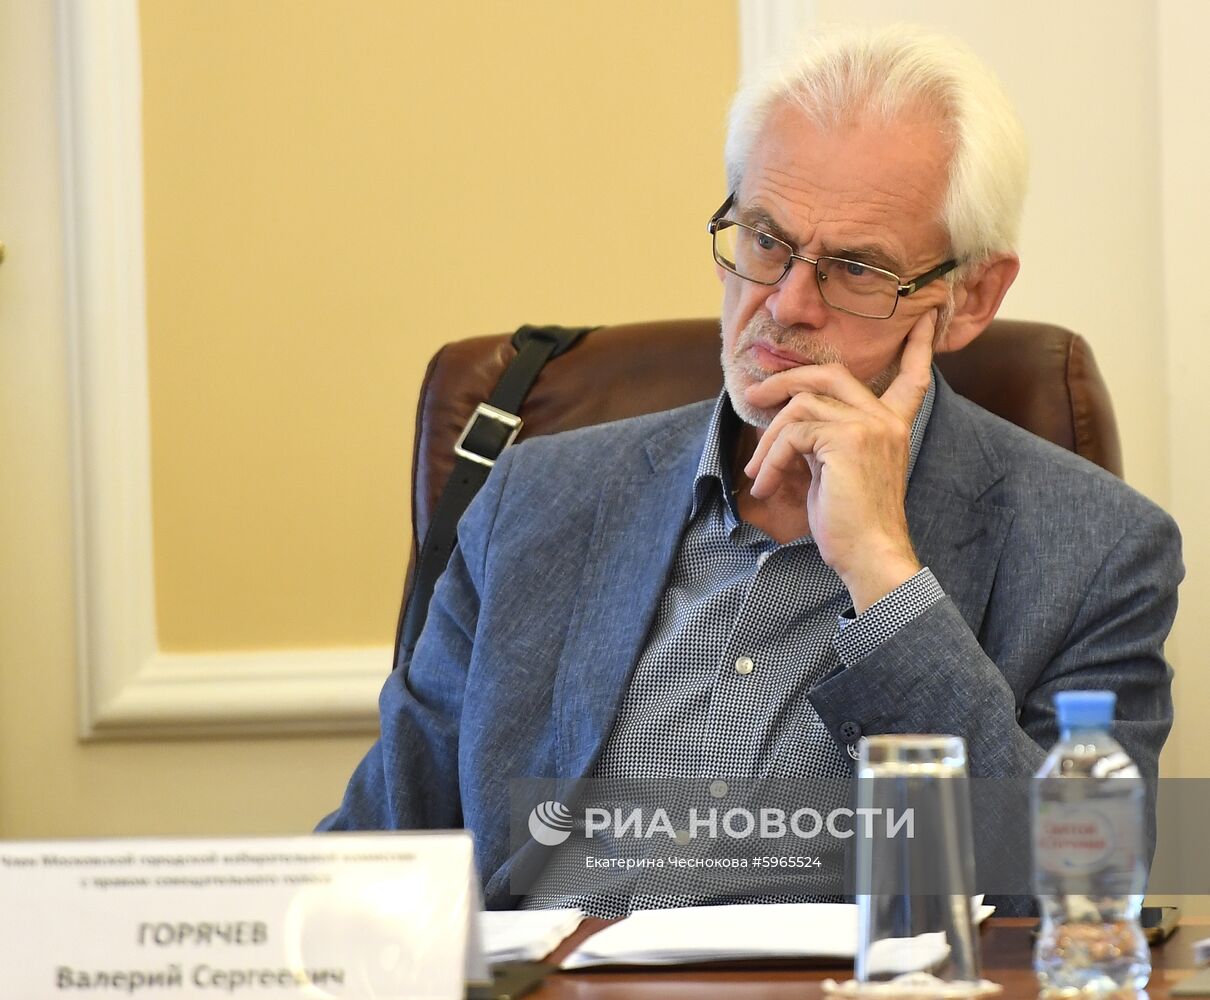 Заседание Московской городской избирательной комиссии